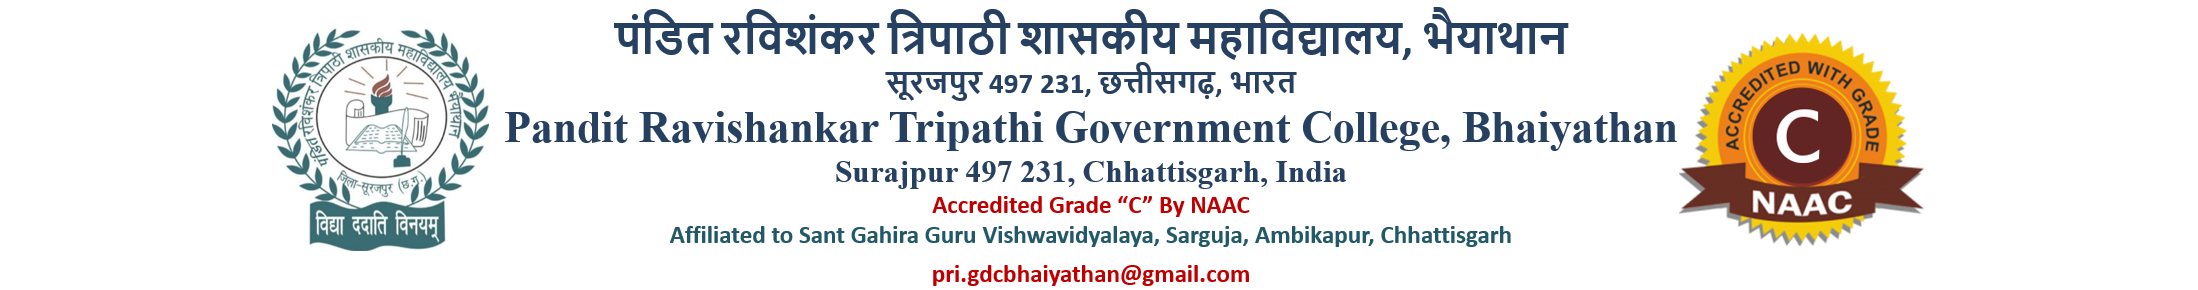 Pt. Ravi Shanker Tripathi Govt College,Bhaiyathan